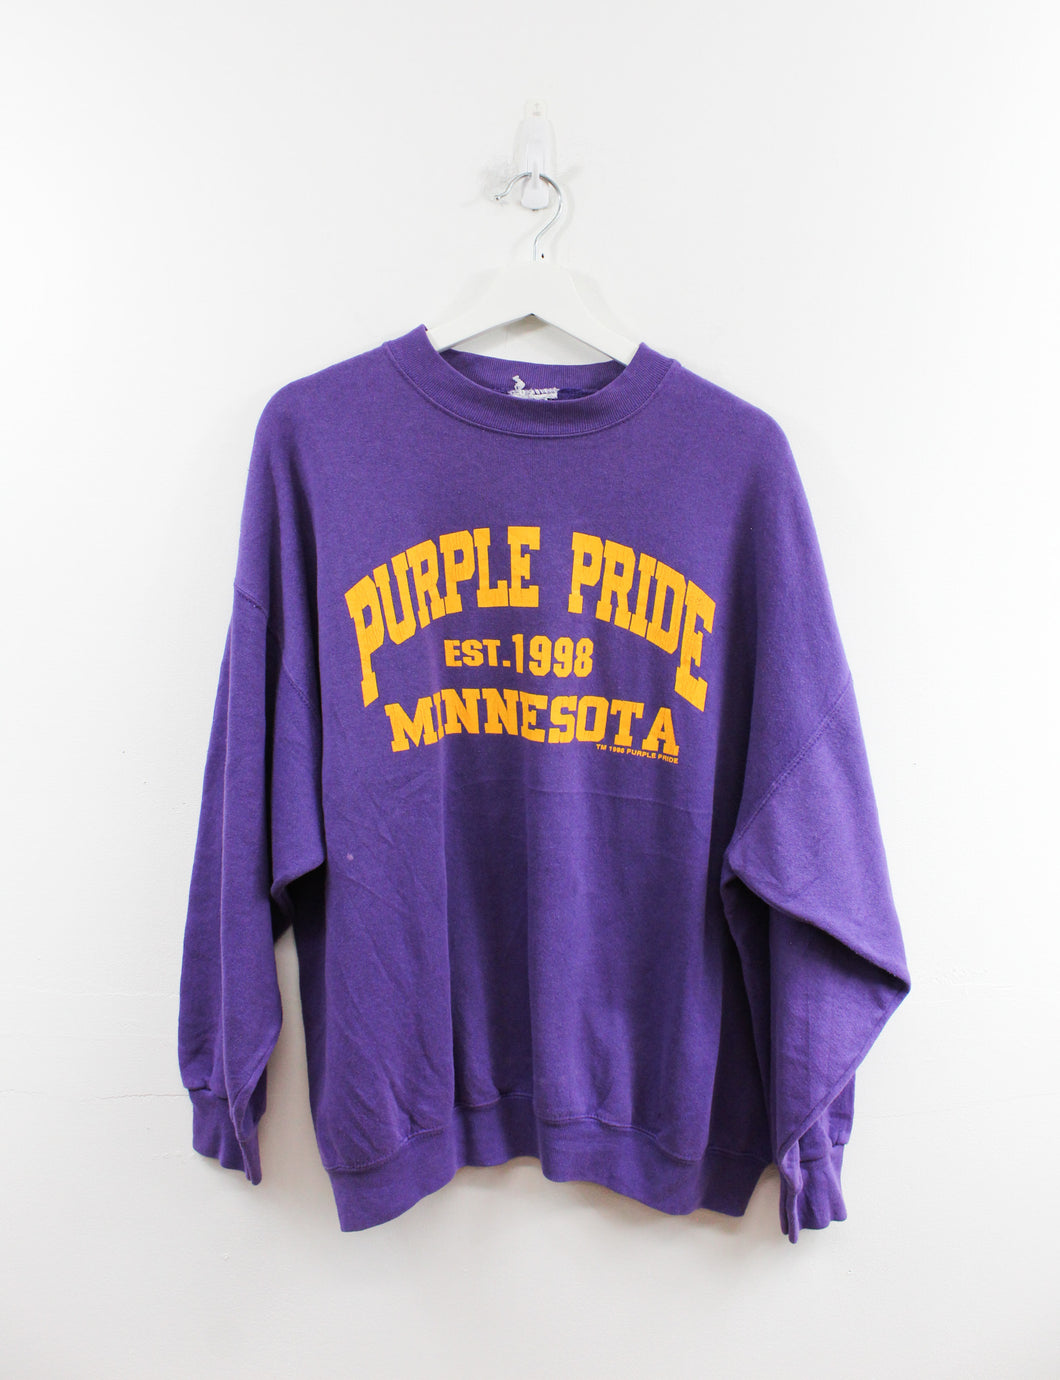 Vintage 98' Minnesota Purple Pride Crewneck